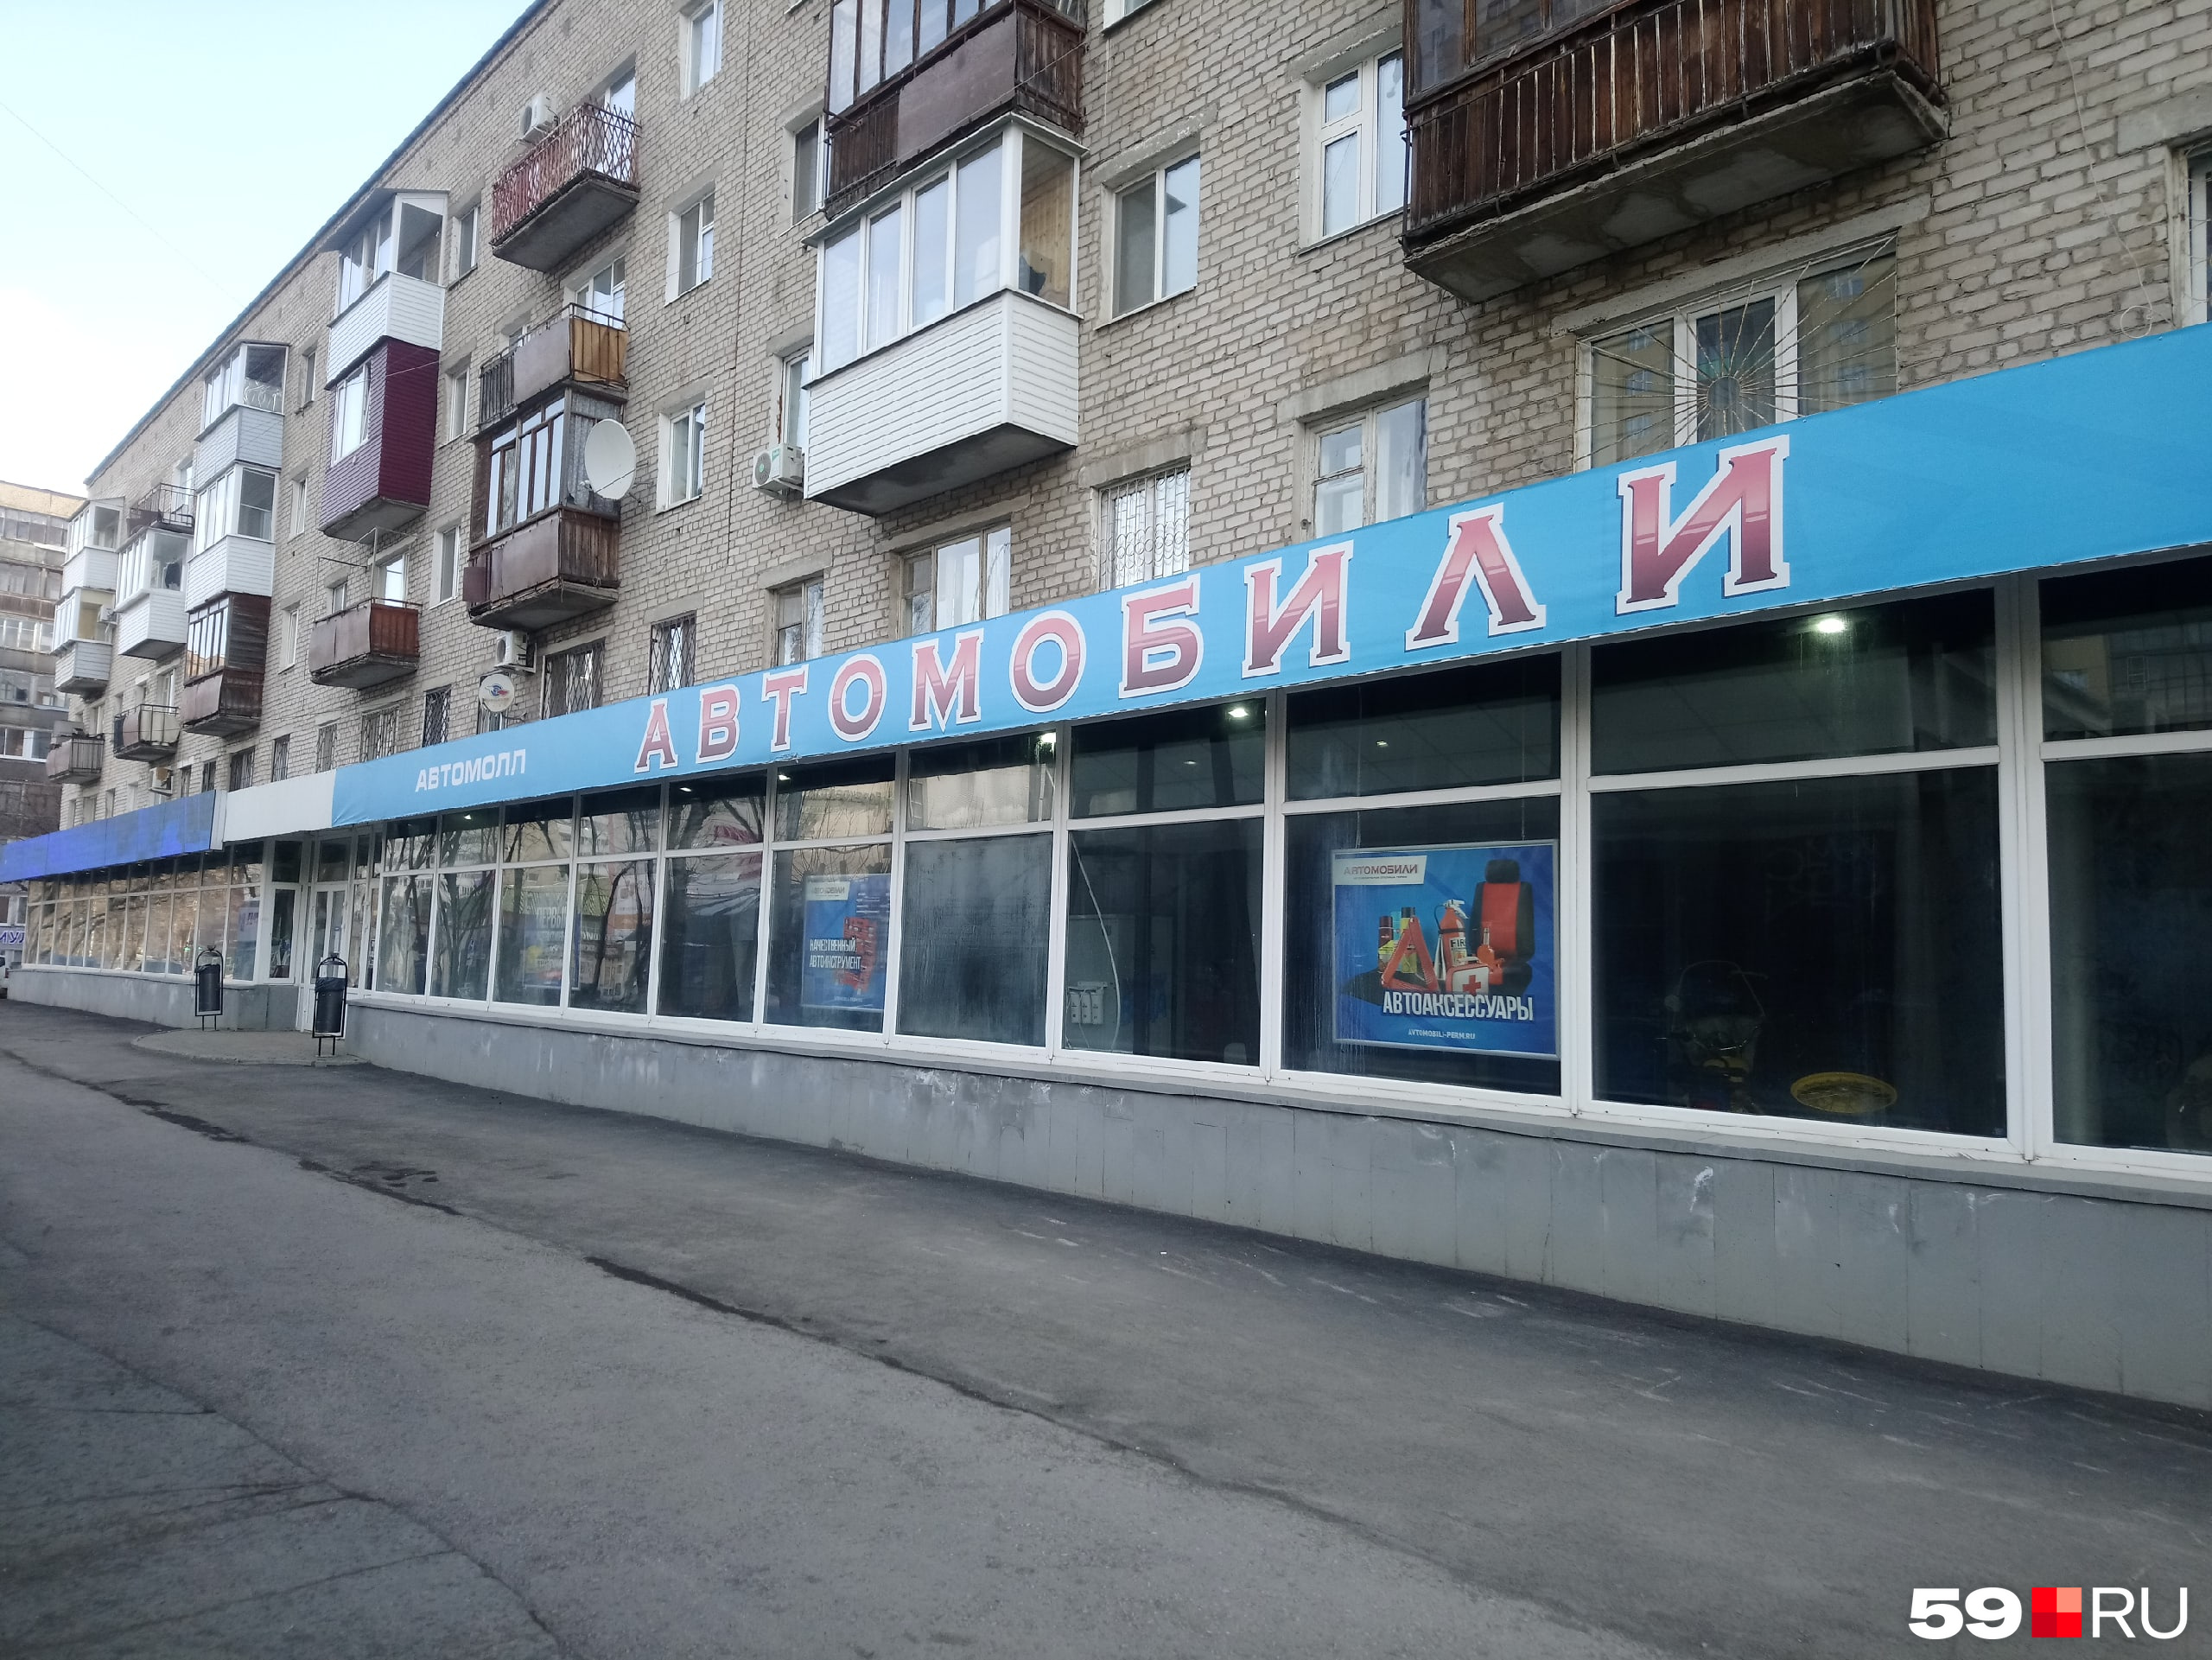 Магазин «Автомобили» на Островского тоже ушел на каникулы